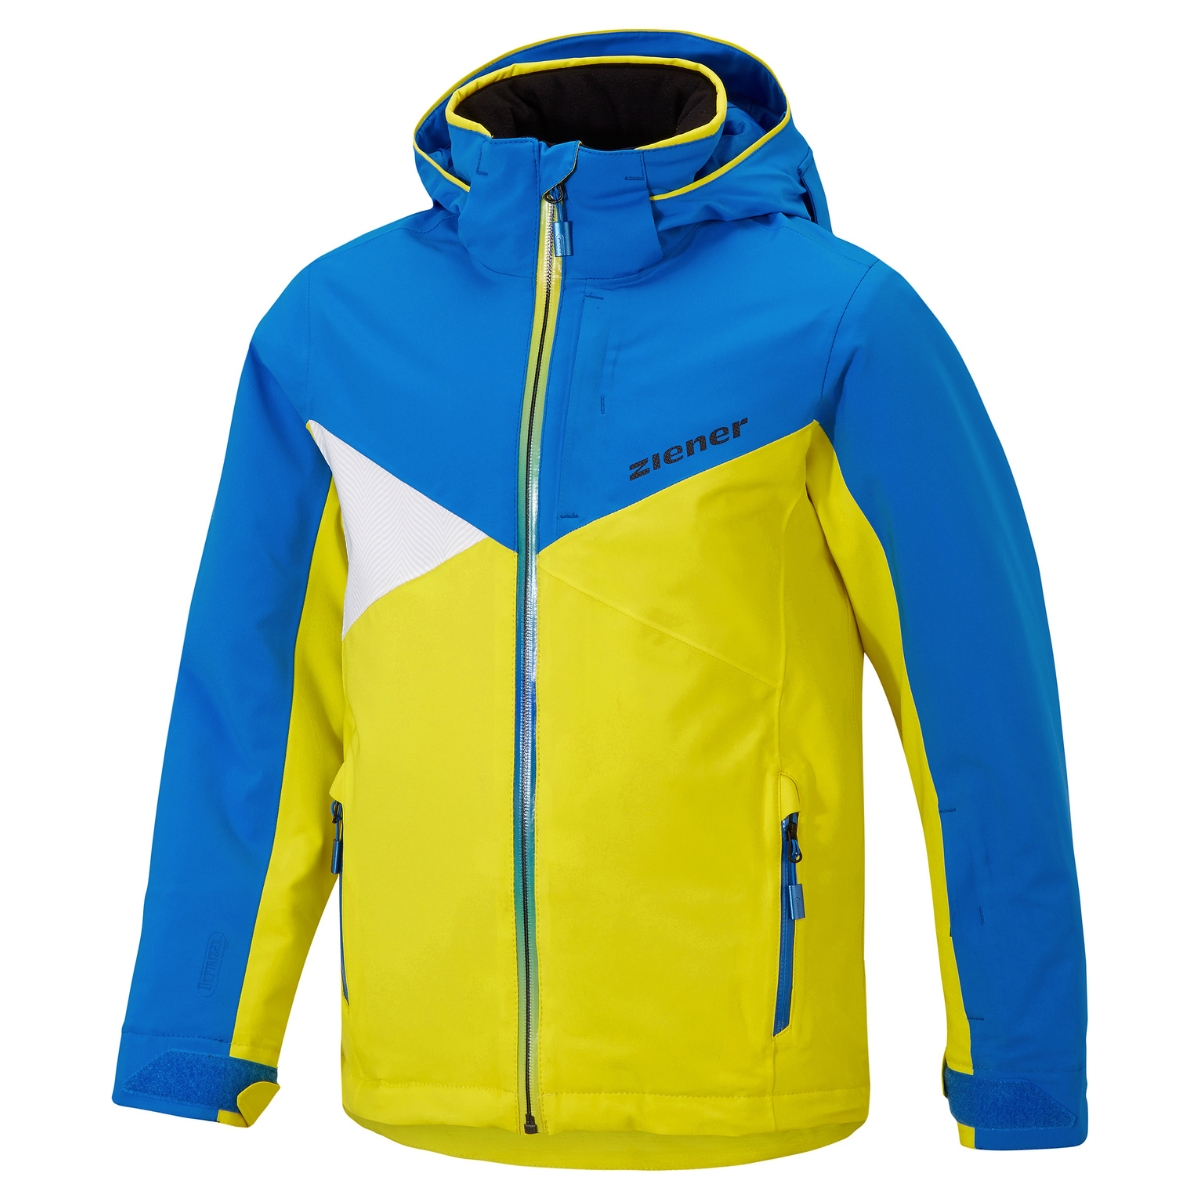 Ziener Damen Skijacke Modell Toja Lady Teamwear mit DERMIZAX® -Membran Art. 184921-672798 yellow persian blue